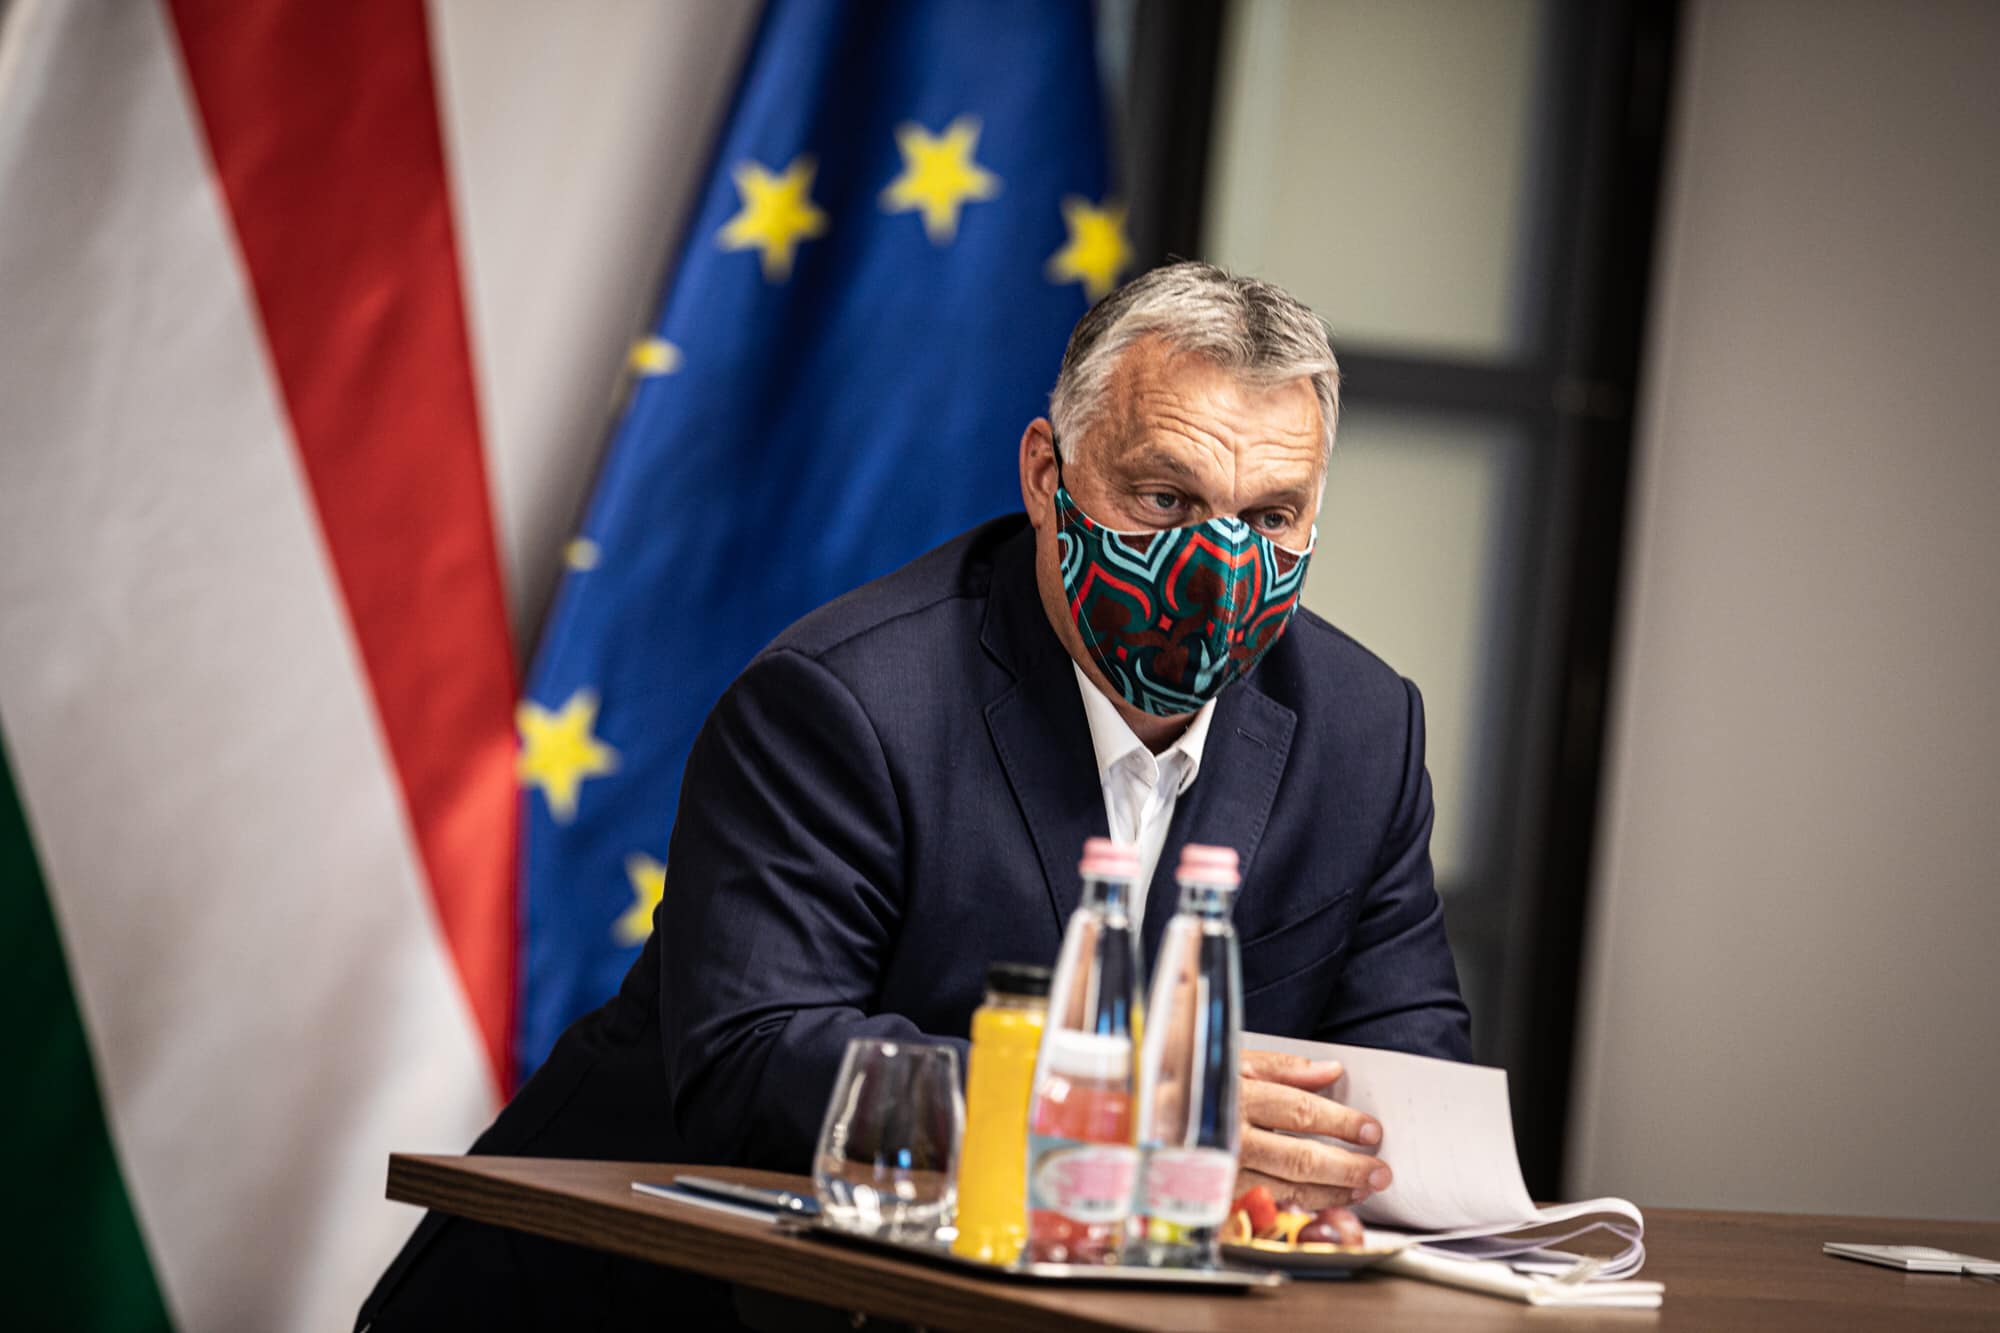 orbán în mască